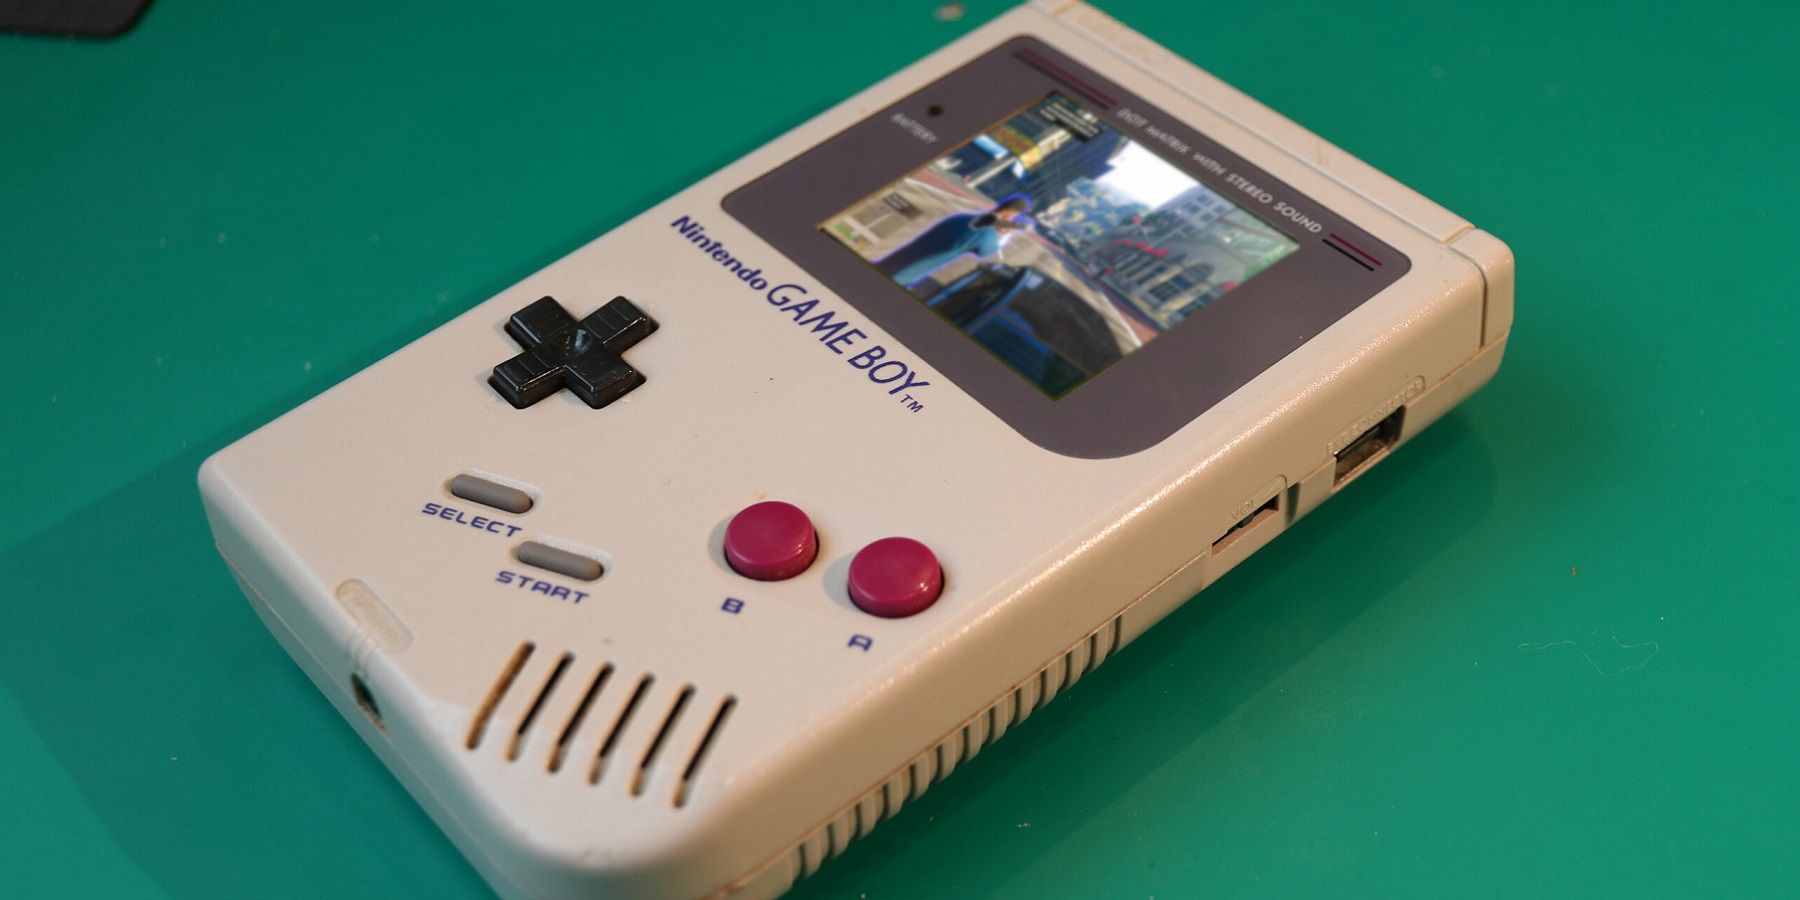 Une photo d'une Nintendo Game Boy avec une capture d'écran de Grand Theft Auto 5 superposée à l'écran.